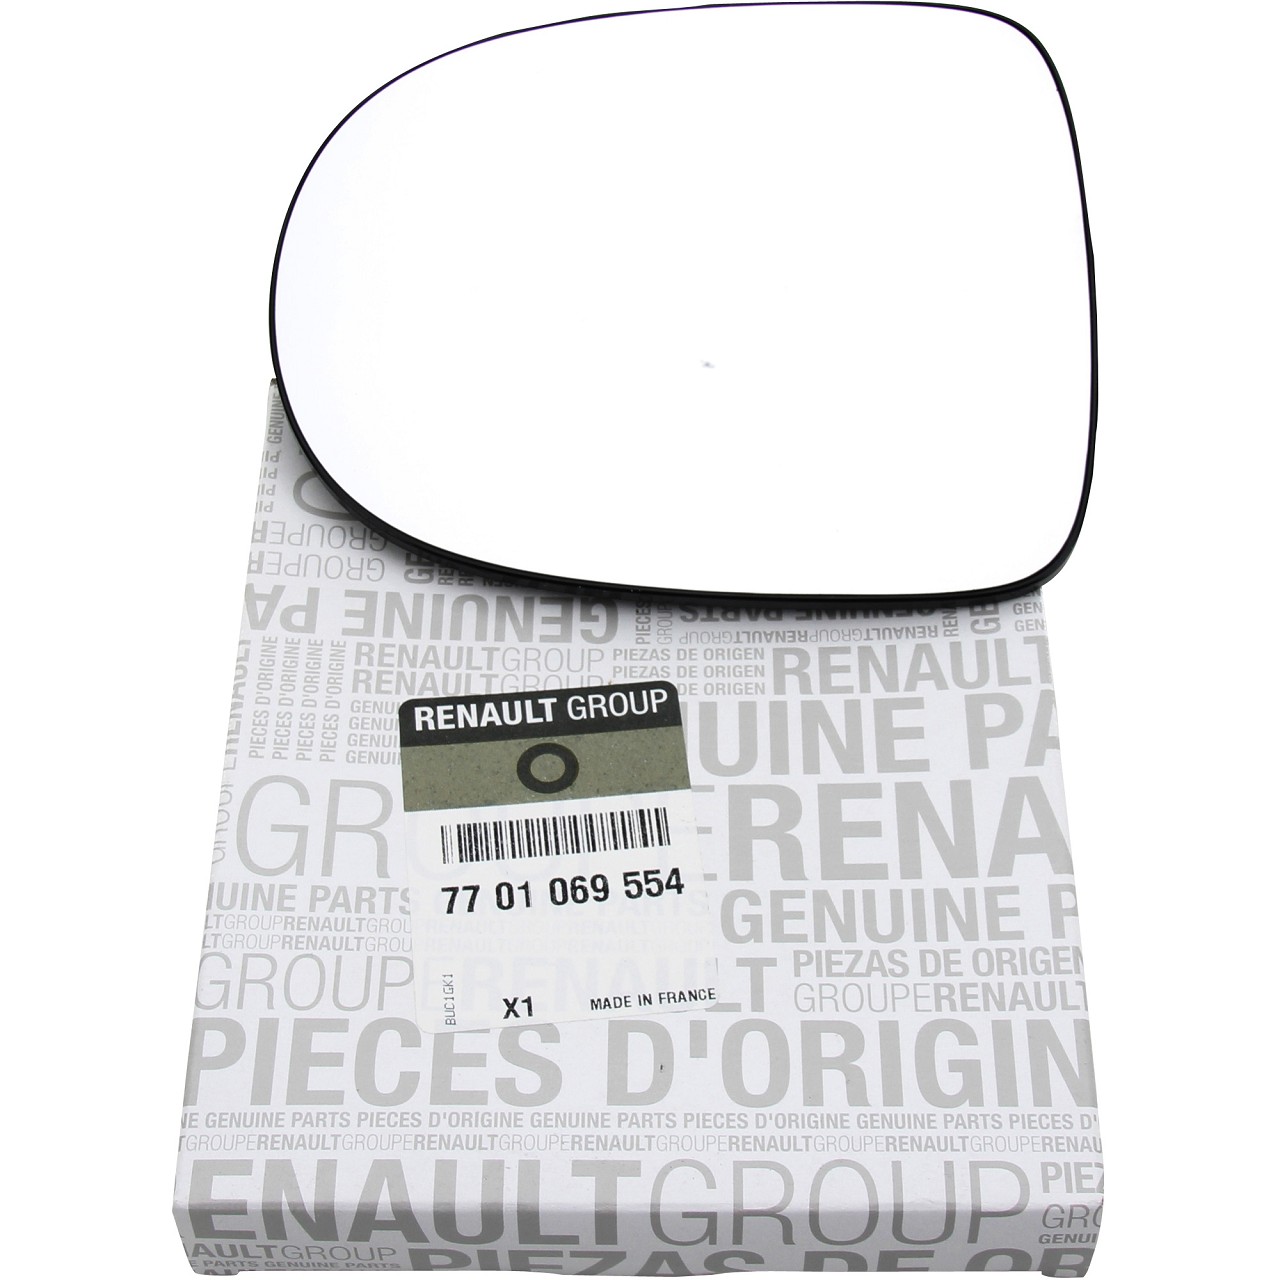 ORIGINAL Renault Außenspiegel Spiegelglas CLIO III TWINGO II rechts 7701069554